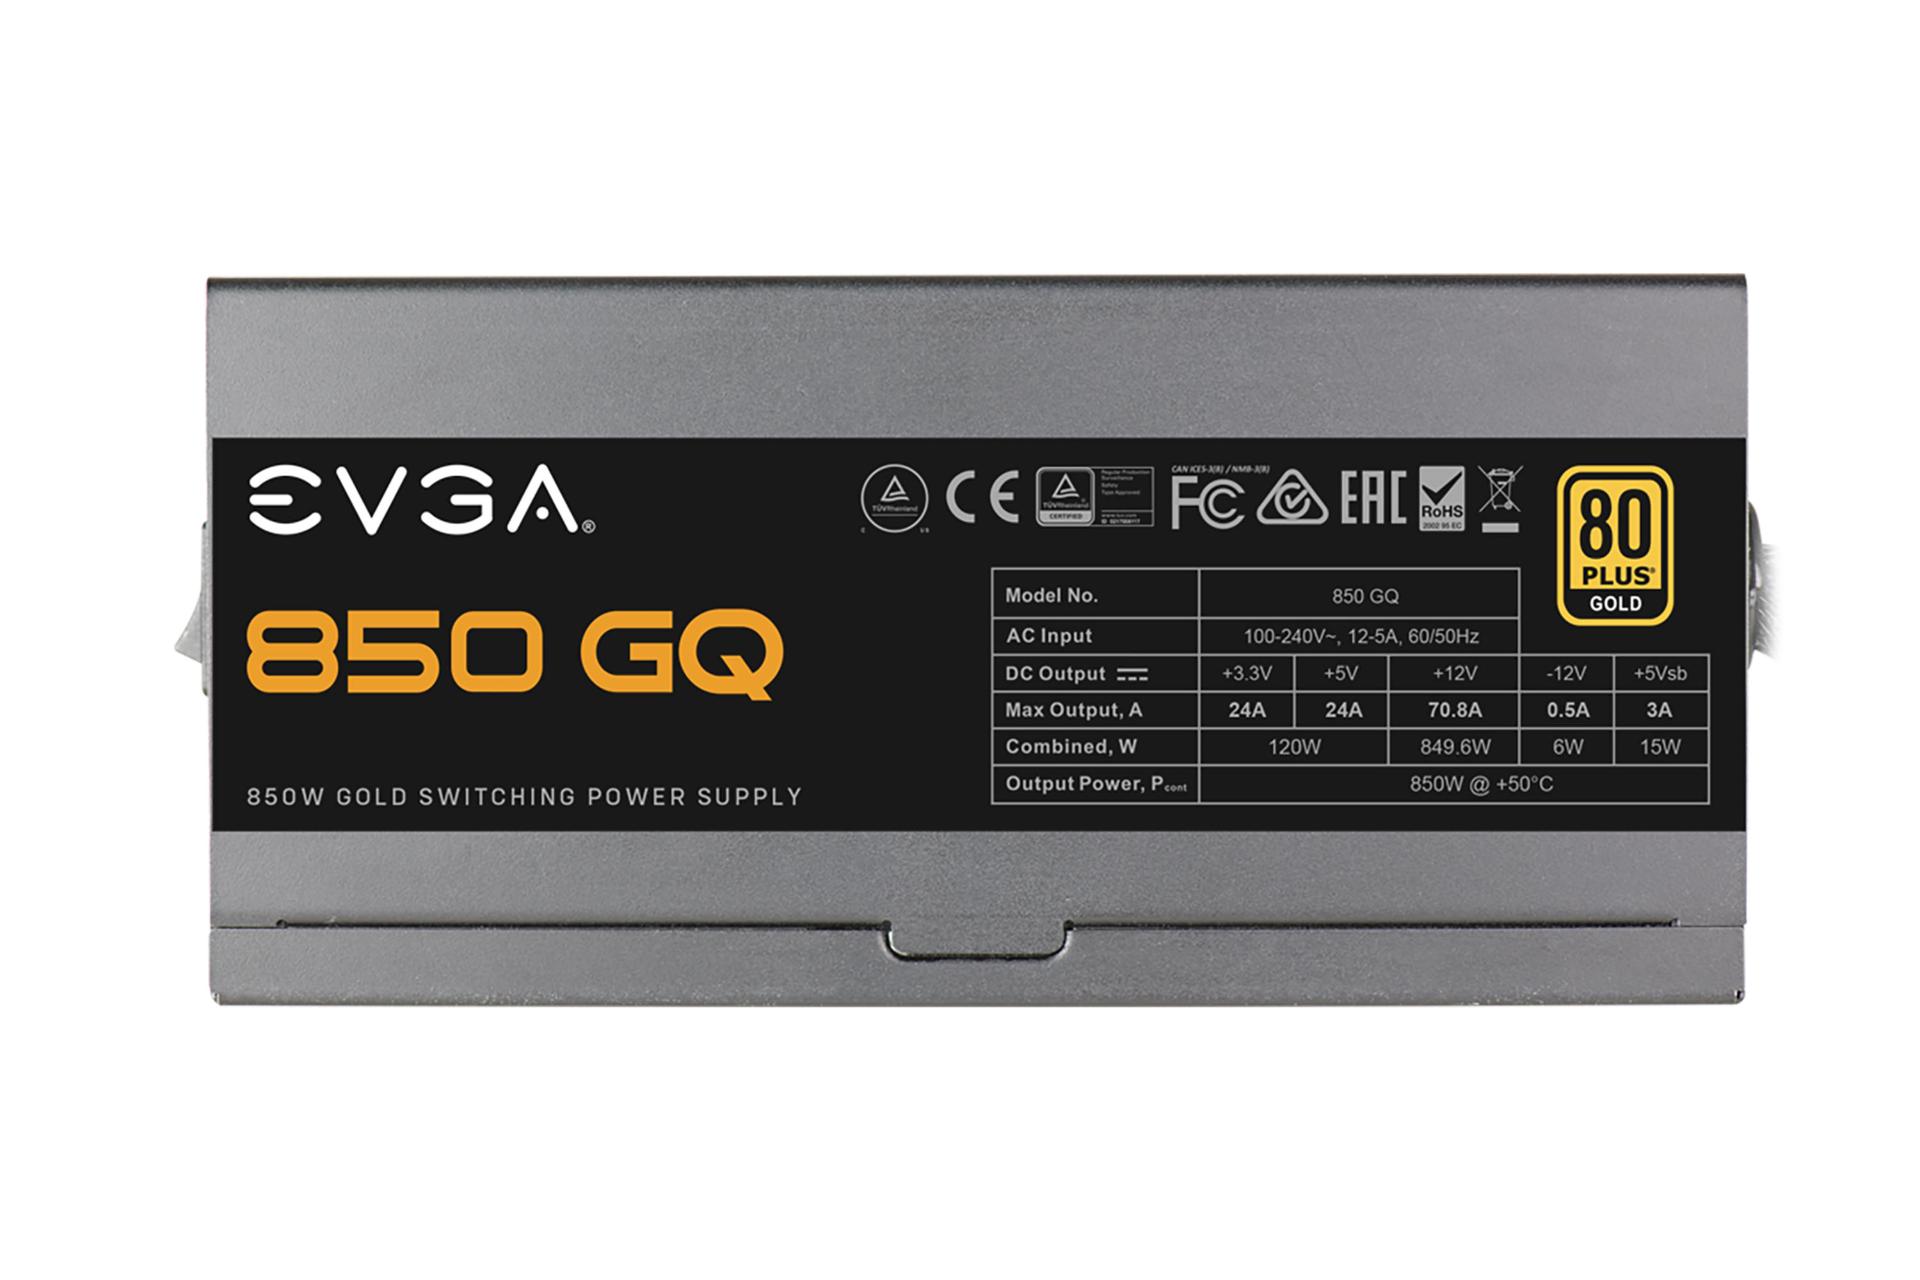 پاور کامپیوتر ای وی جی ای 850 GQ با توان 850 وات برچسب مشخصات